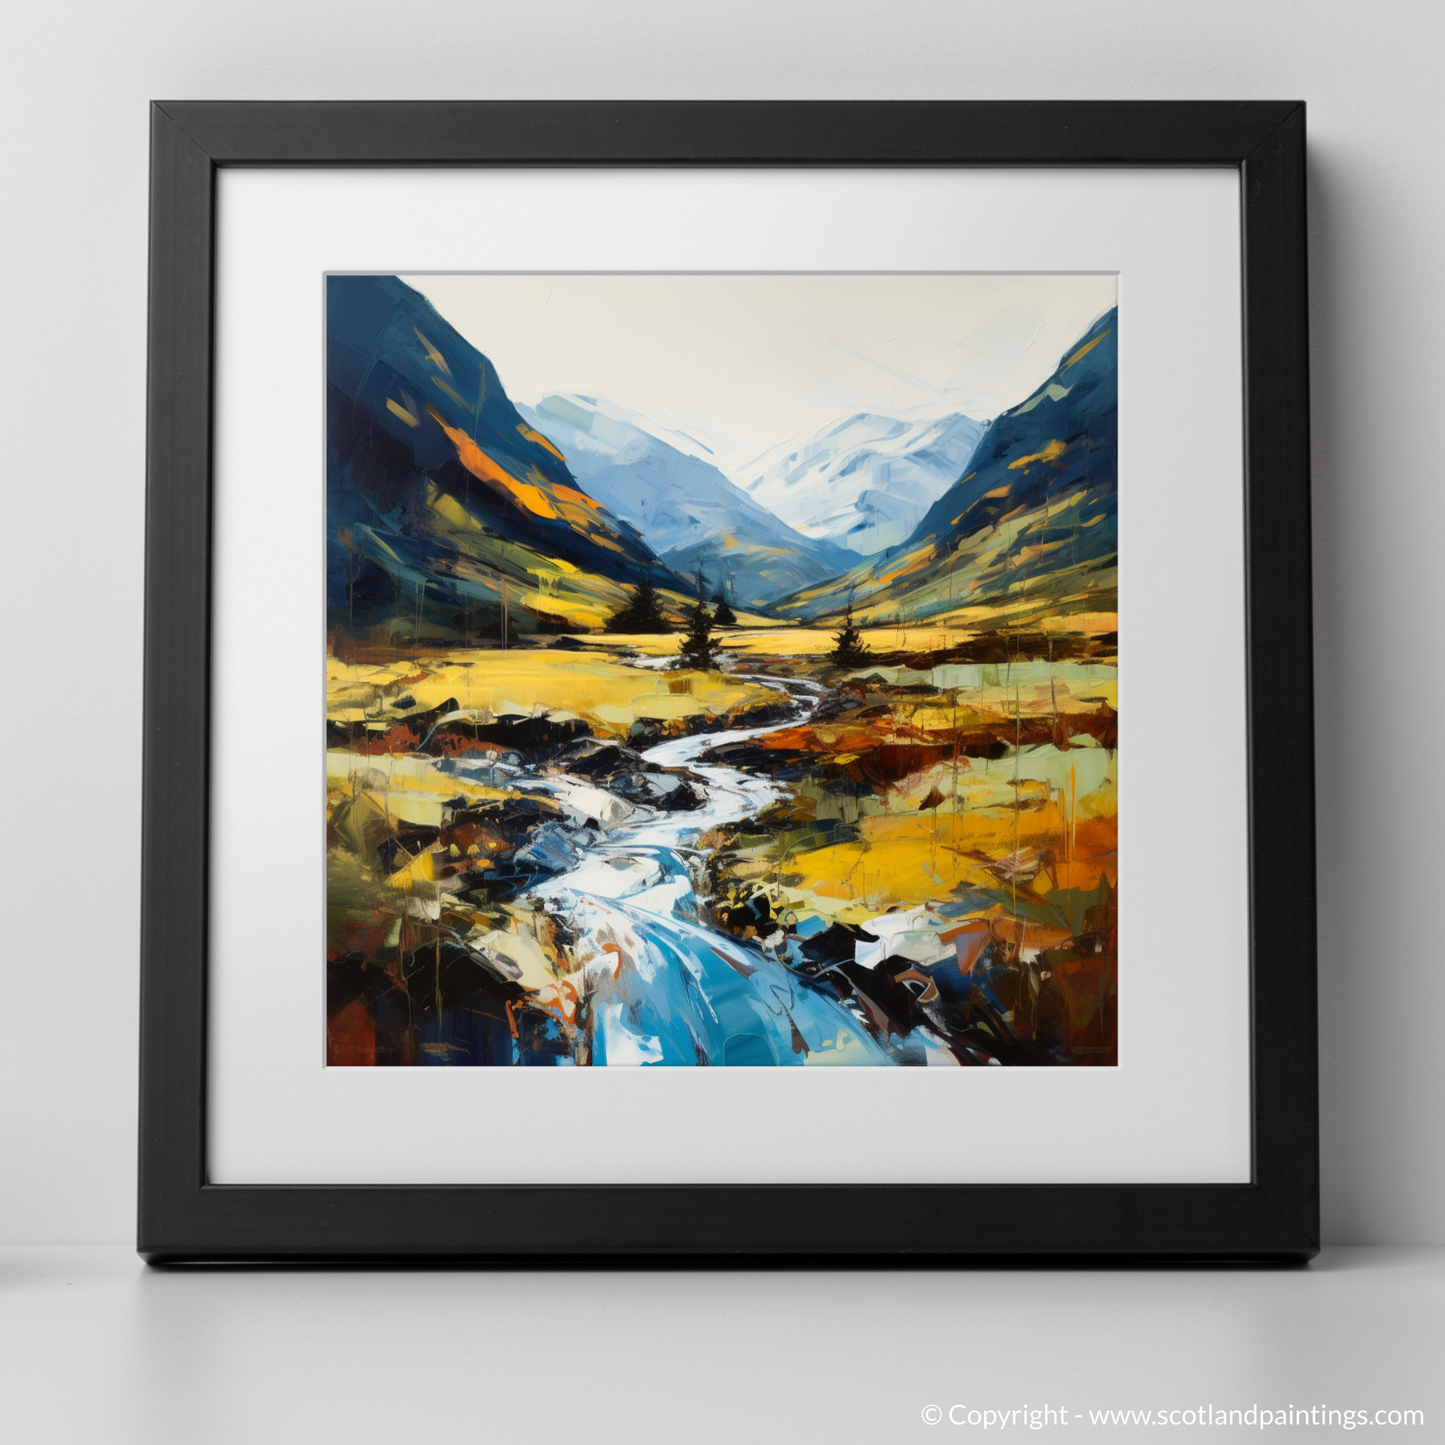 Art Print of Glen Nevis, Highlands with a black frame